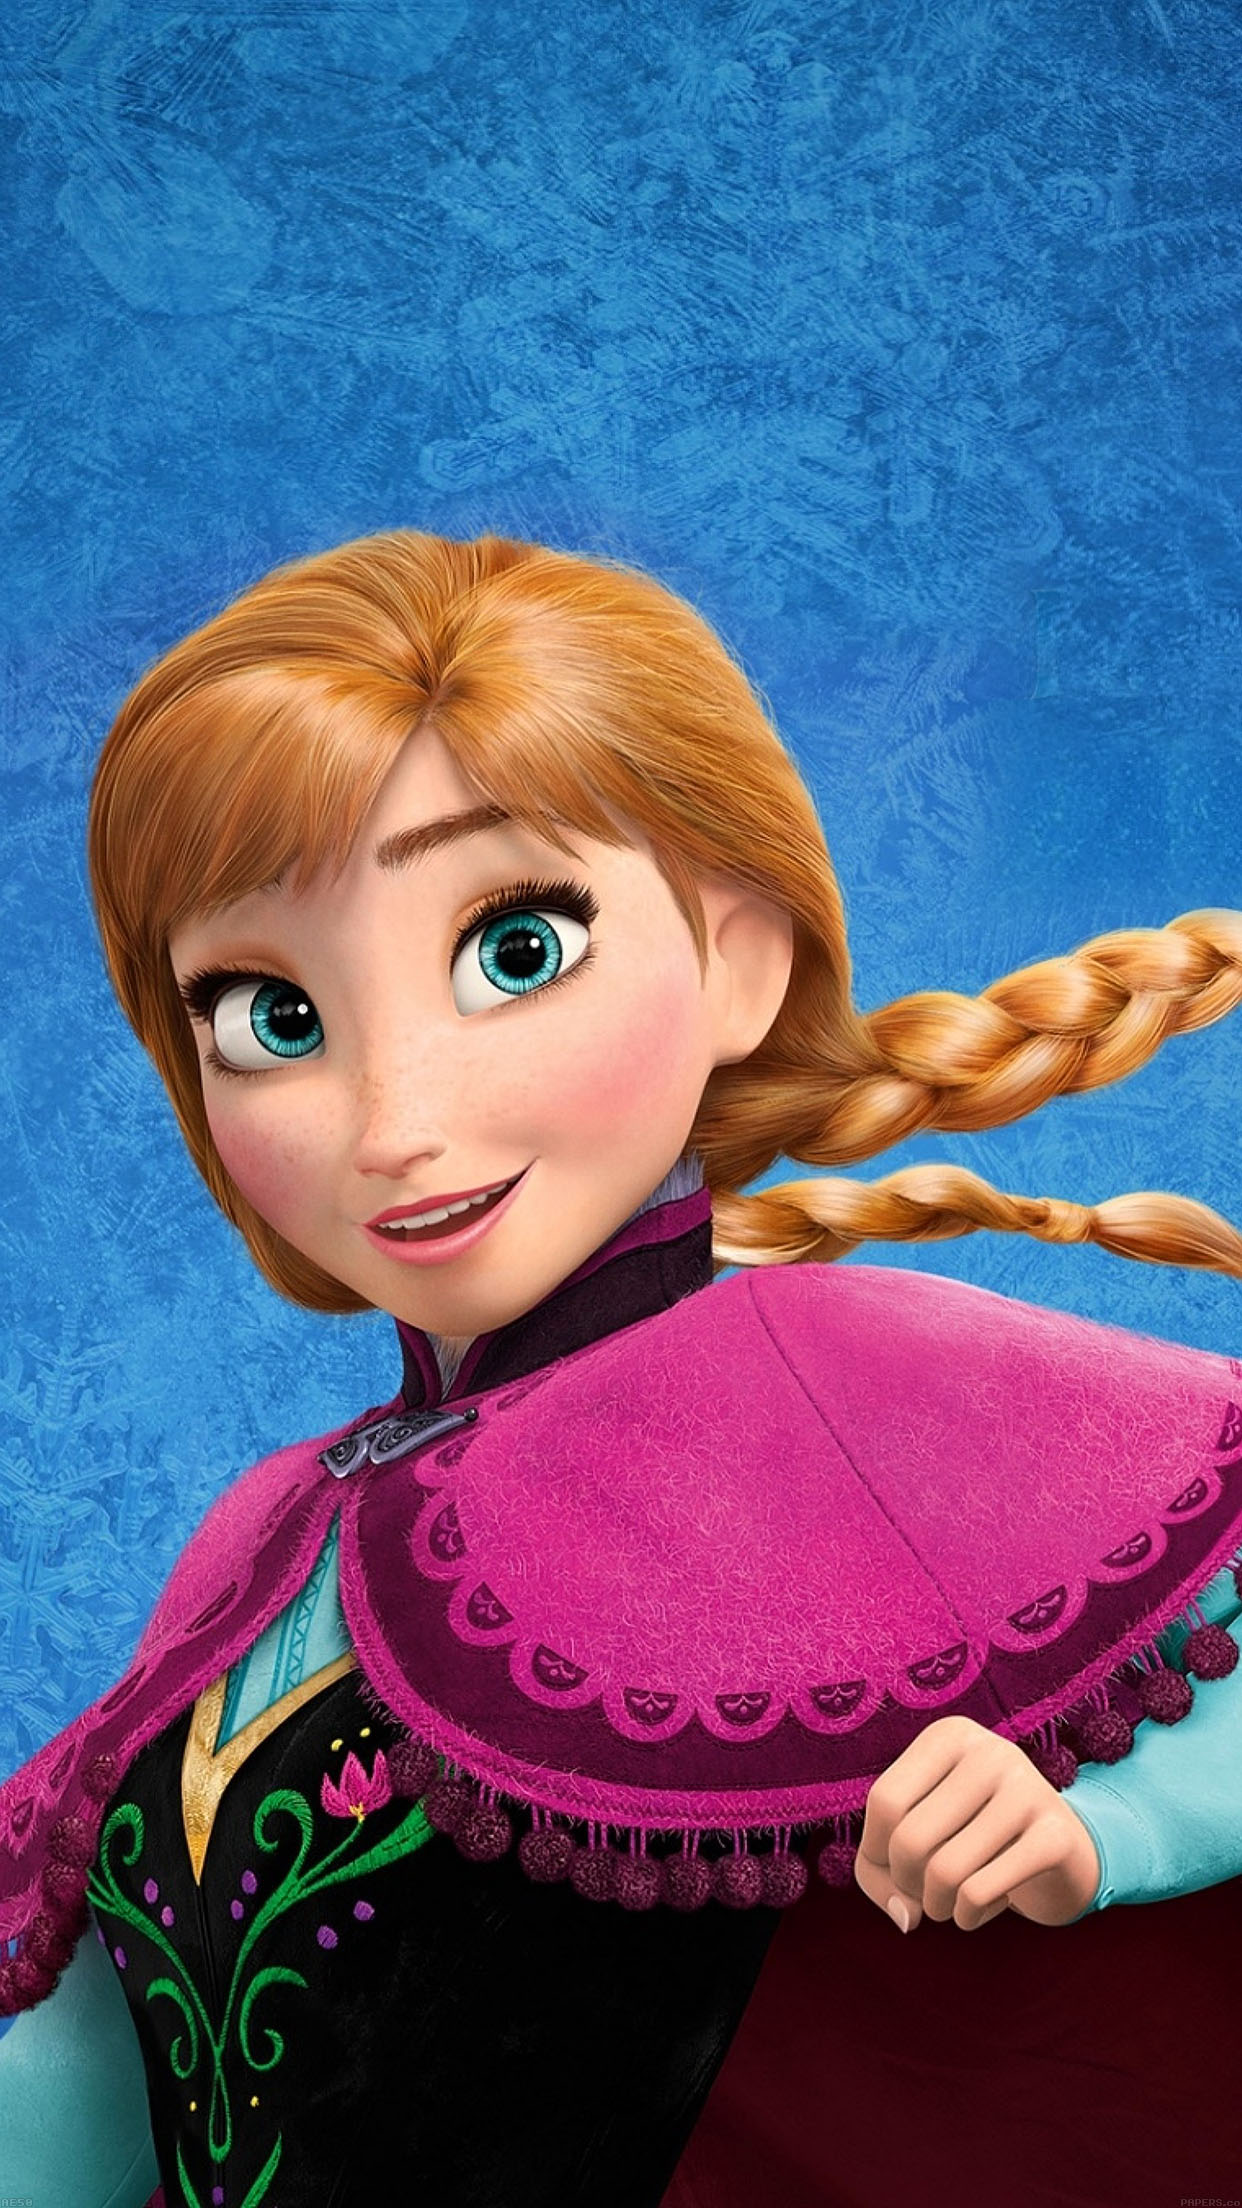 Frozen Disney Princess Anna - HD Wallpaper 